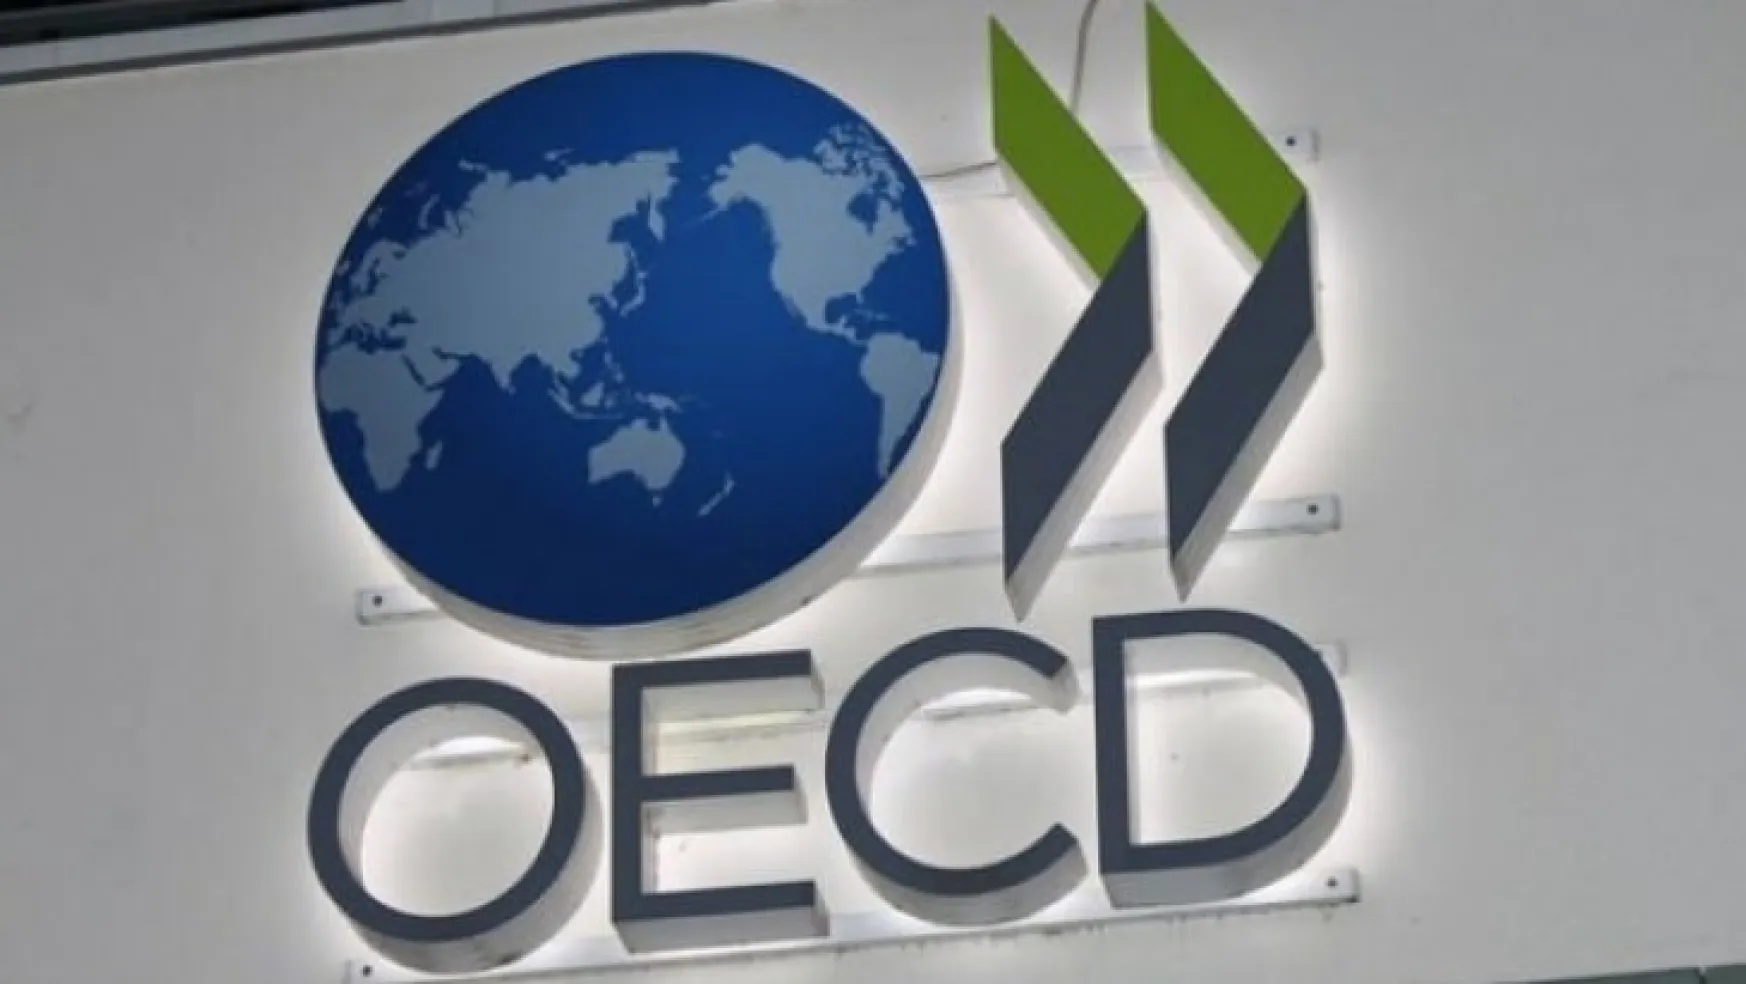 OECD Türkiye büyüme tahminini yükseltti